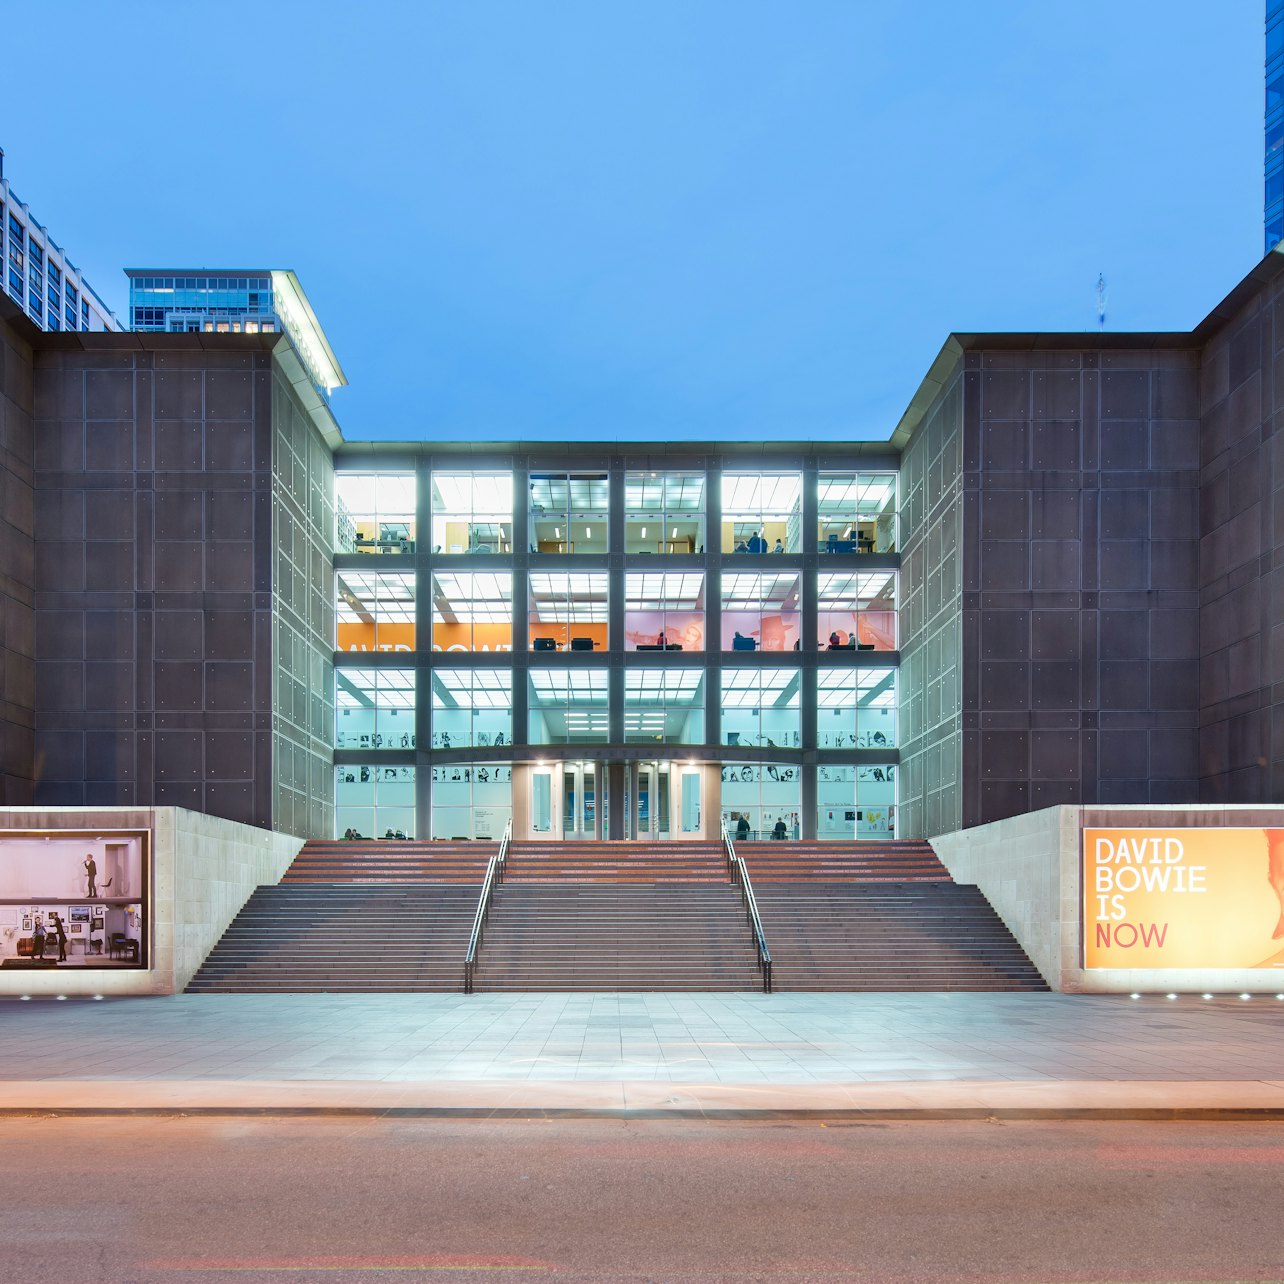 Museu de Arte Contemporânea de Chicago (MCA) - Acomodações em Chicago